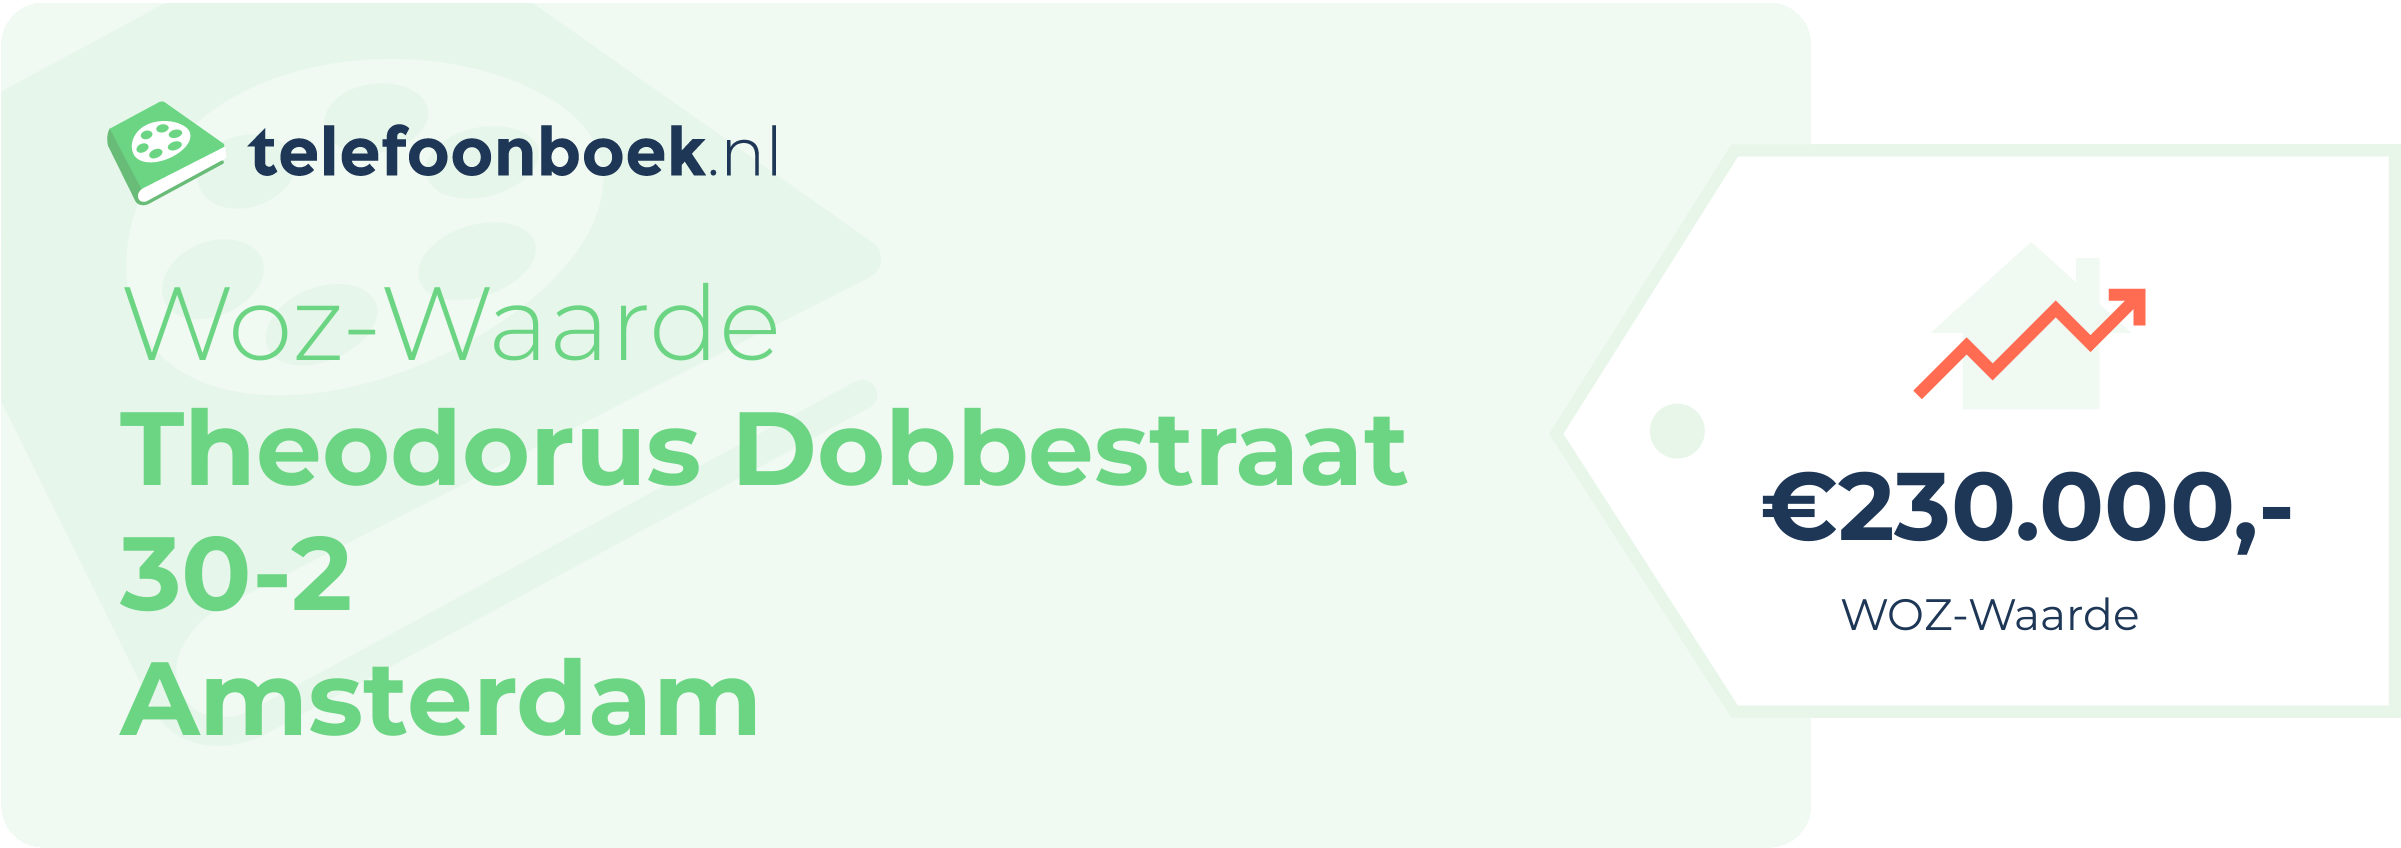 WOZ-waarde Theodorus Dobbestraat 30-2 Amsterdam